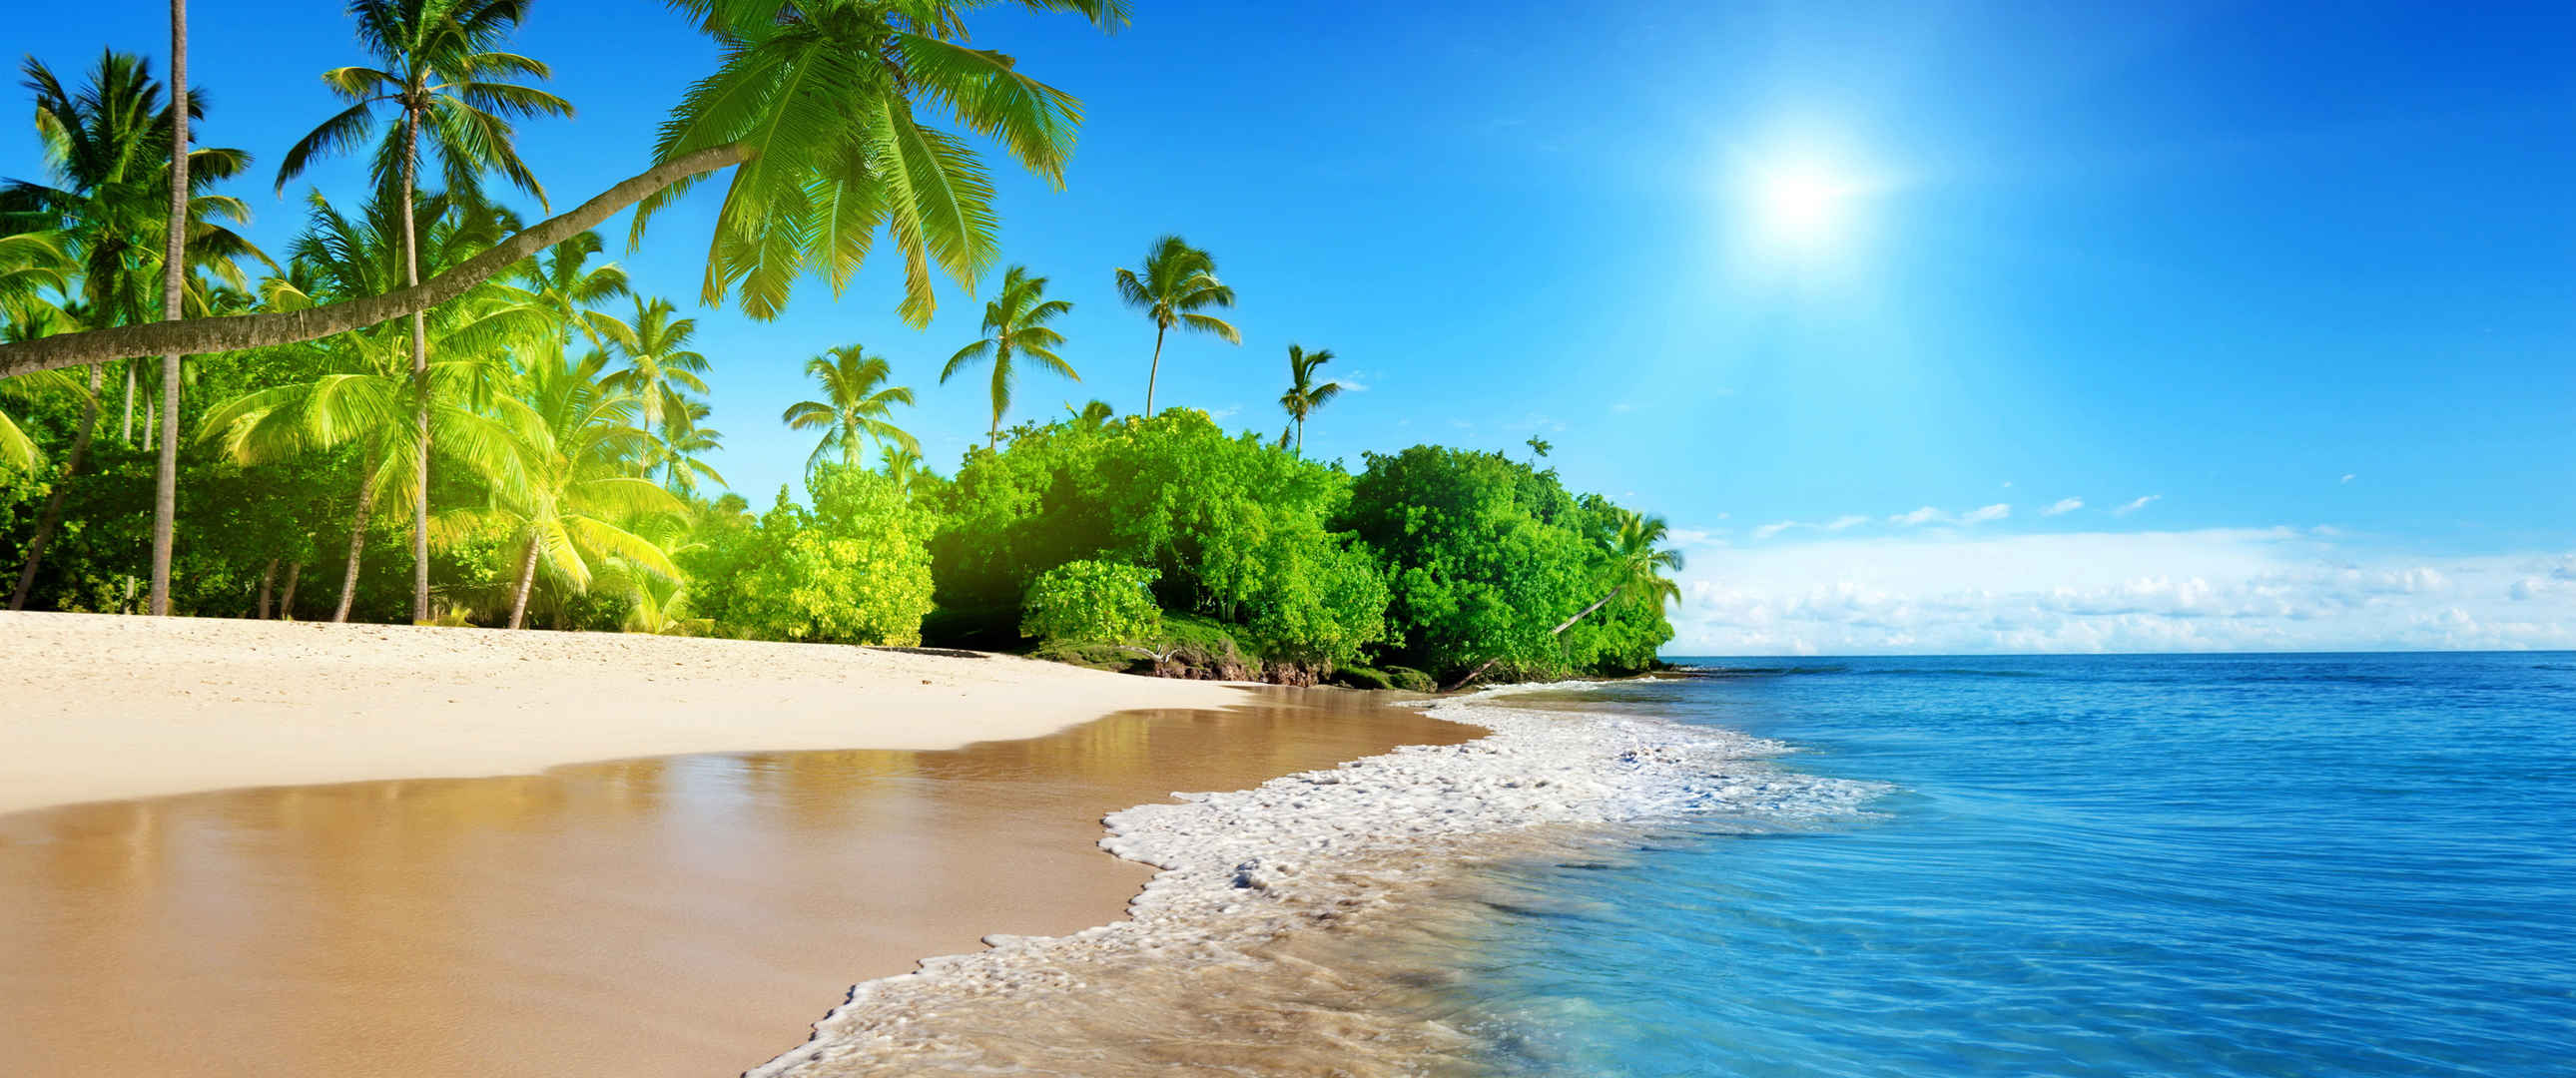 蔚蓝的大海,阳光,棕榈树,沙滩,3440x1440风景壁纸